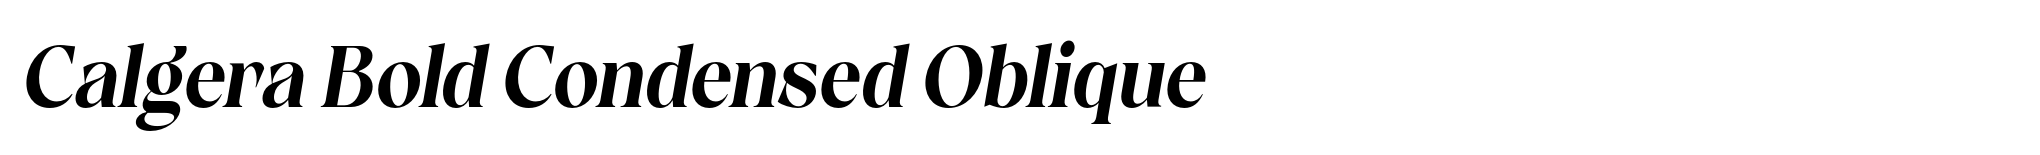 Calgera Bold Condensed Oblique image